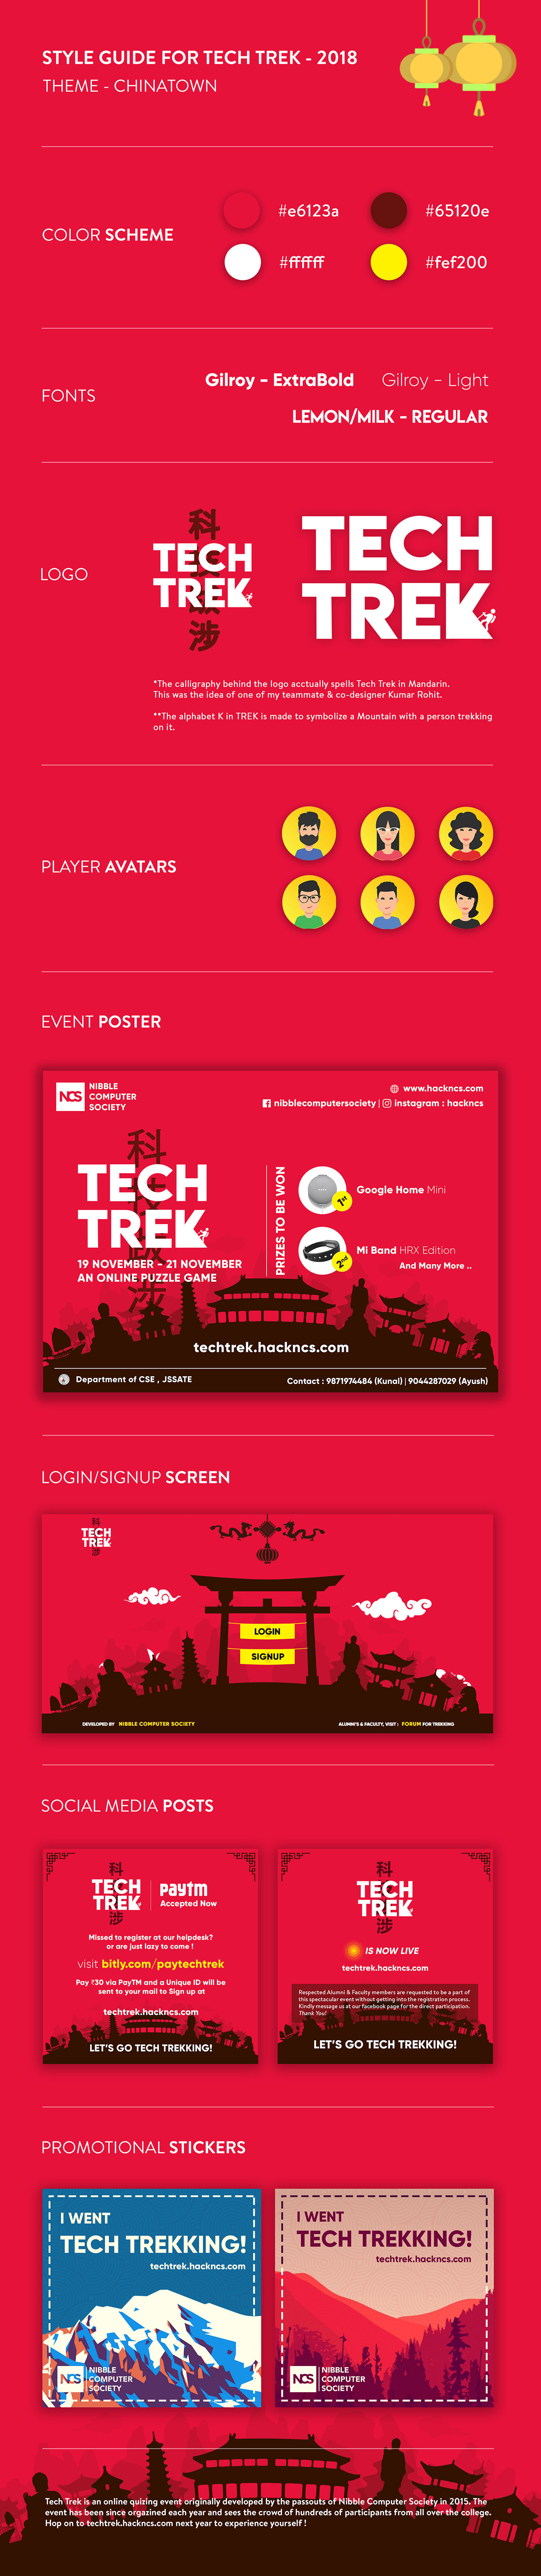 tech trek ncs UI branding  Trek poster social media